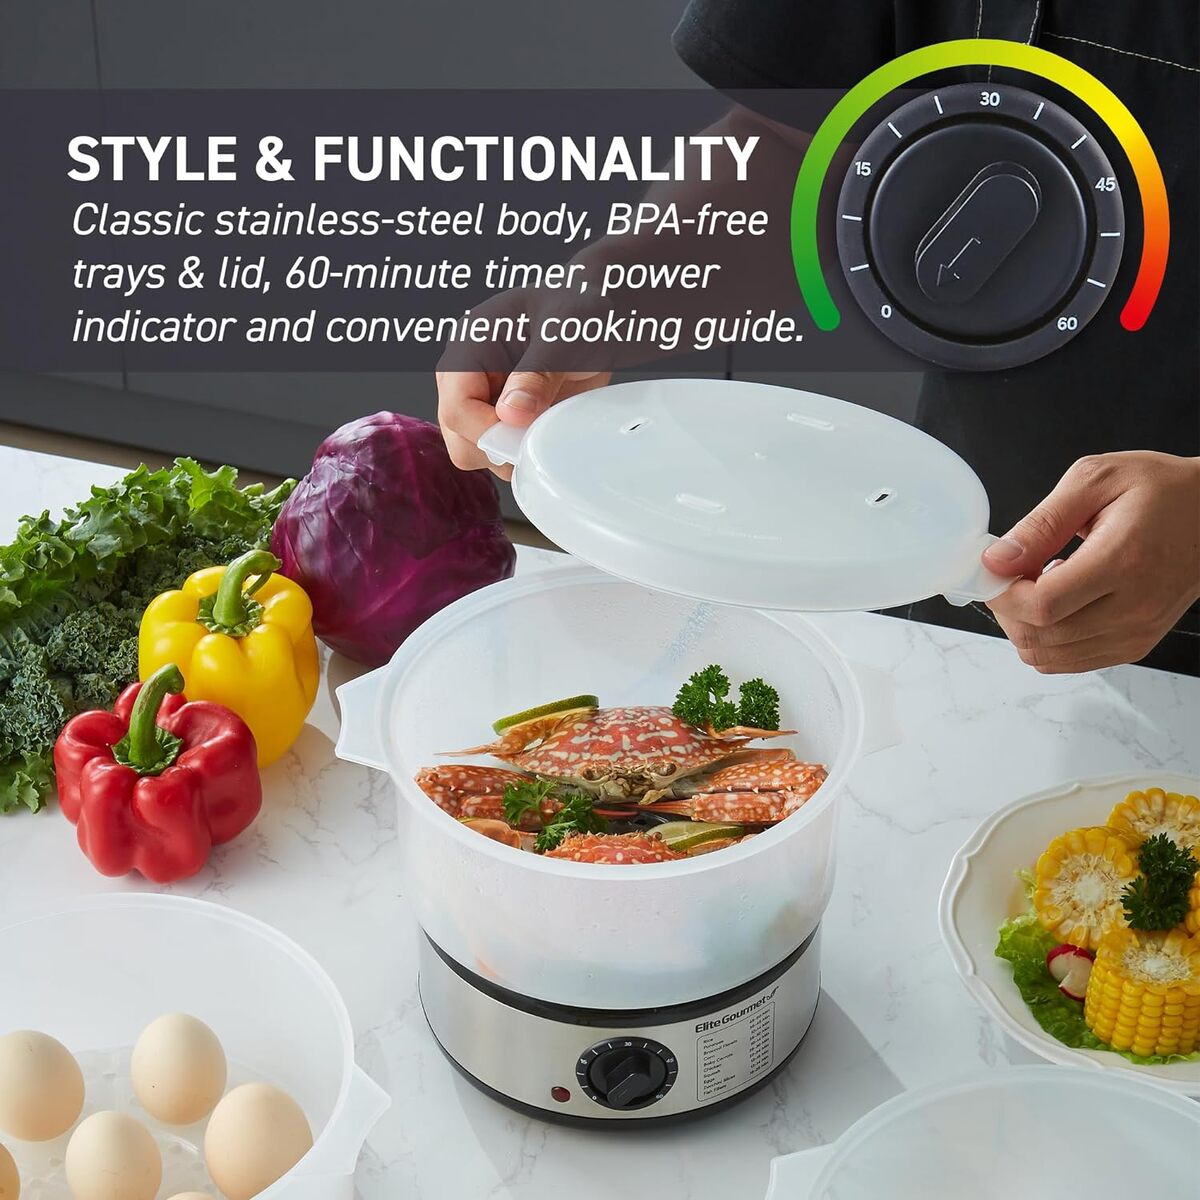 Elite Gourmet 7.5 Quart Stainless Steel 3 Tier Food Steamer